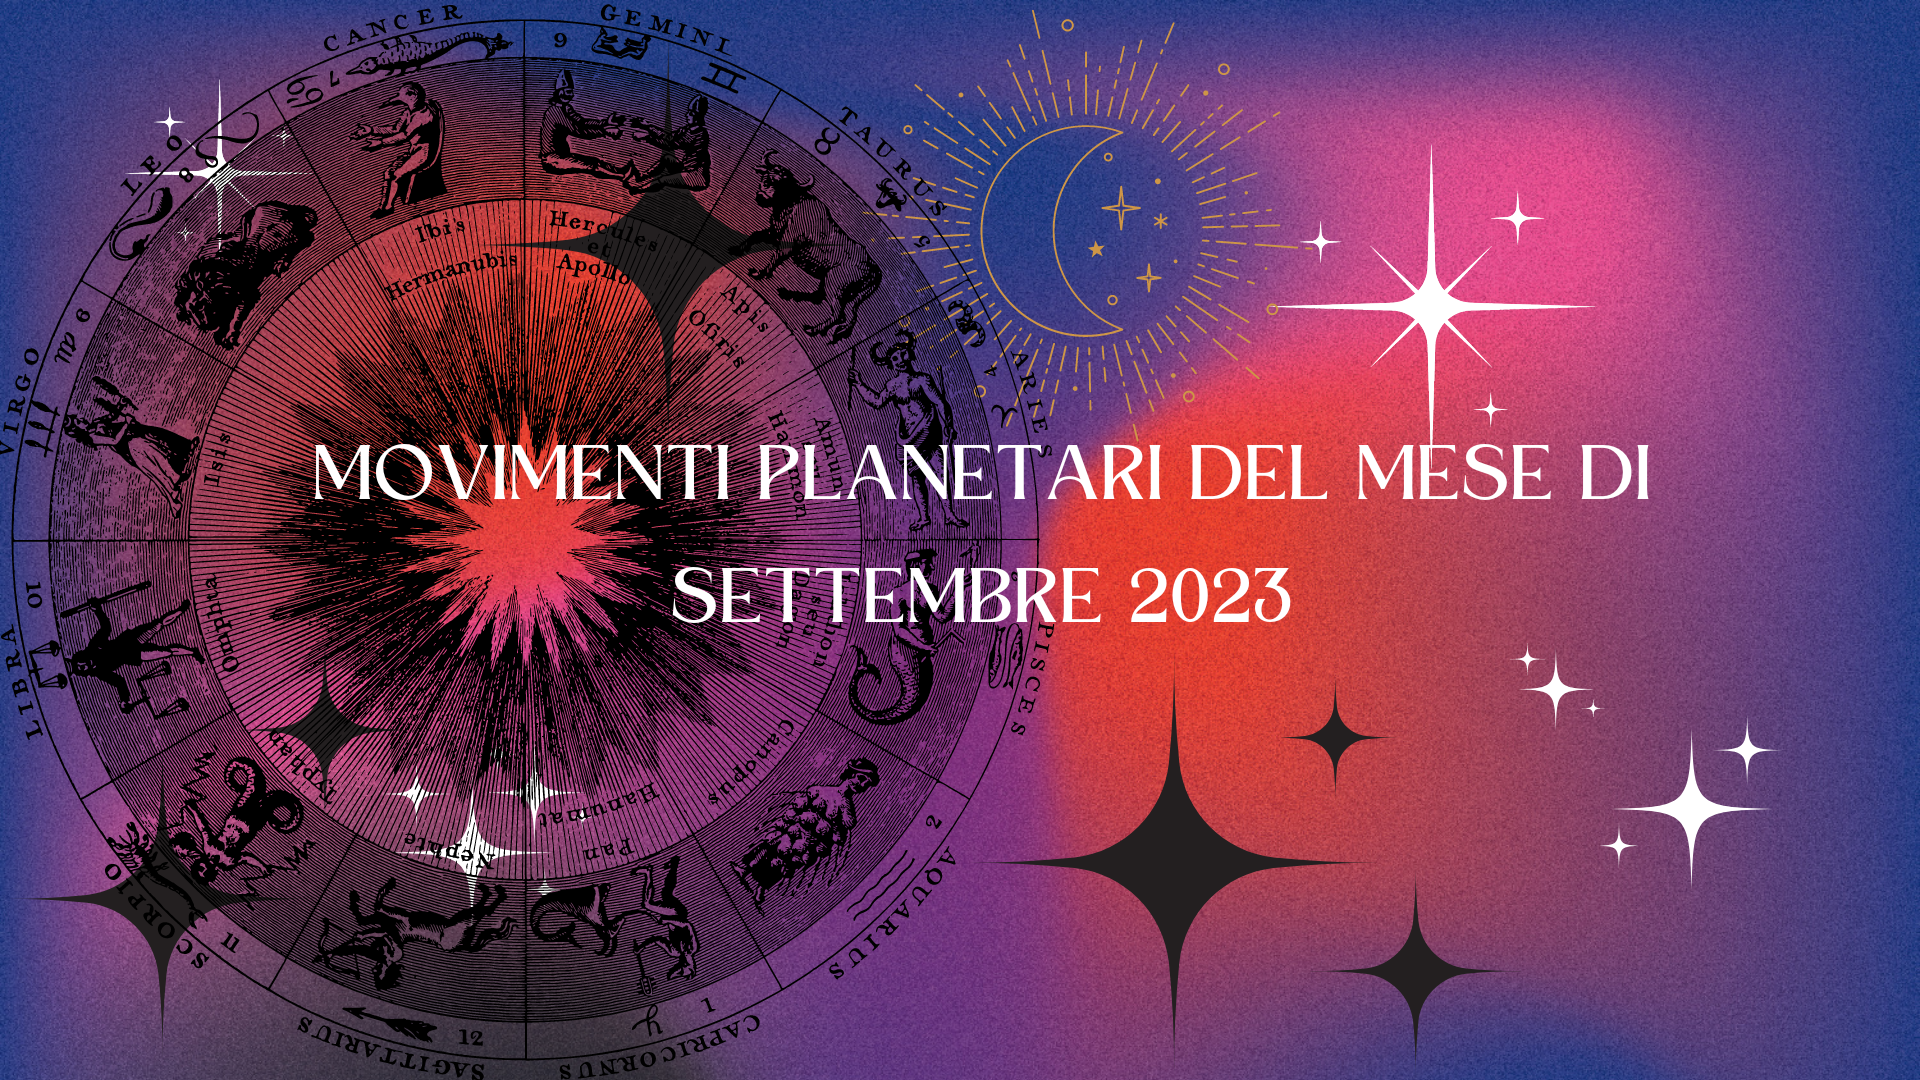 Al momento stai visualizzando Movimenti Planetari del mese di settembre 2023